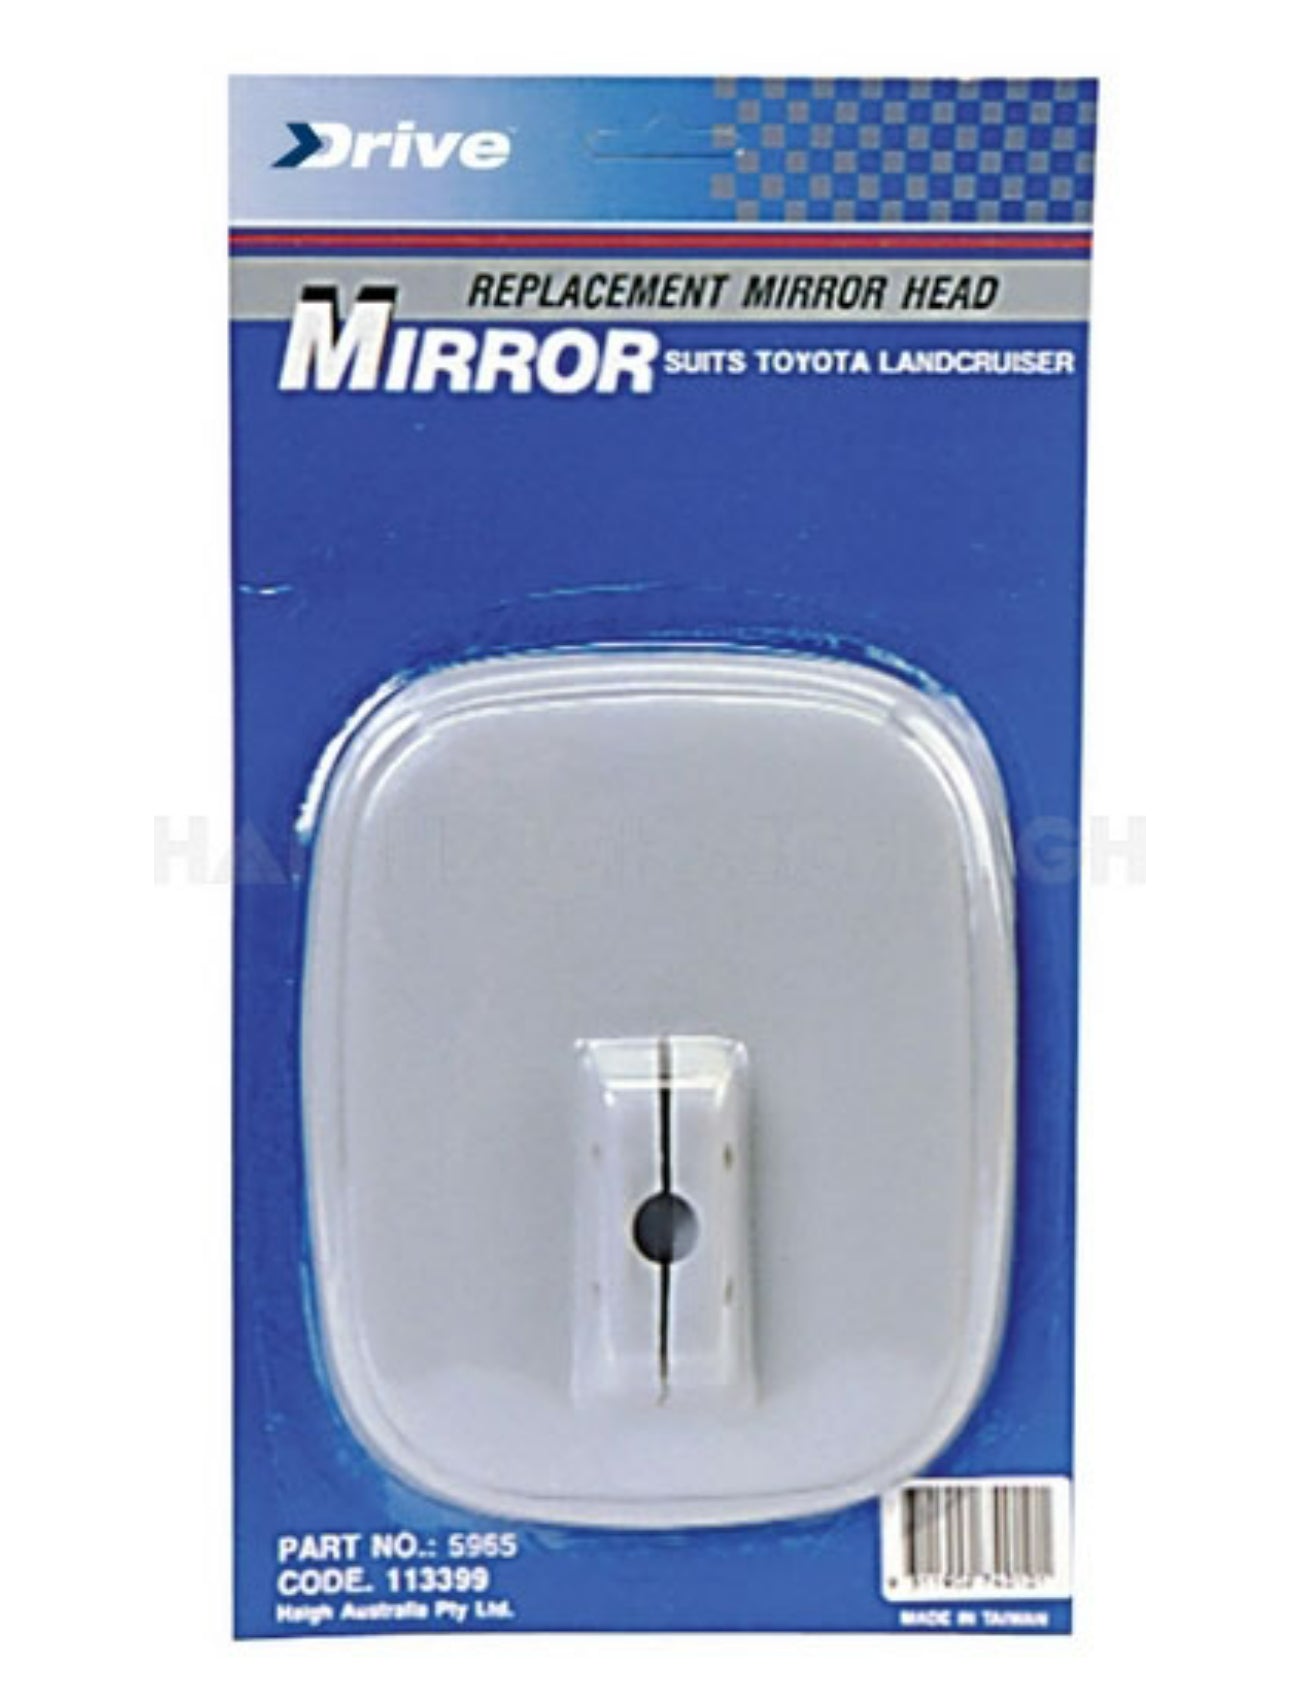 MIRROR HEAD 135x180mm